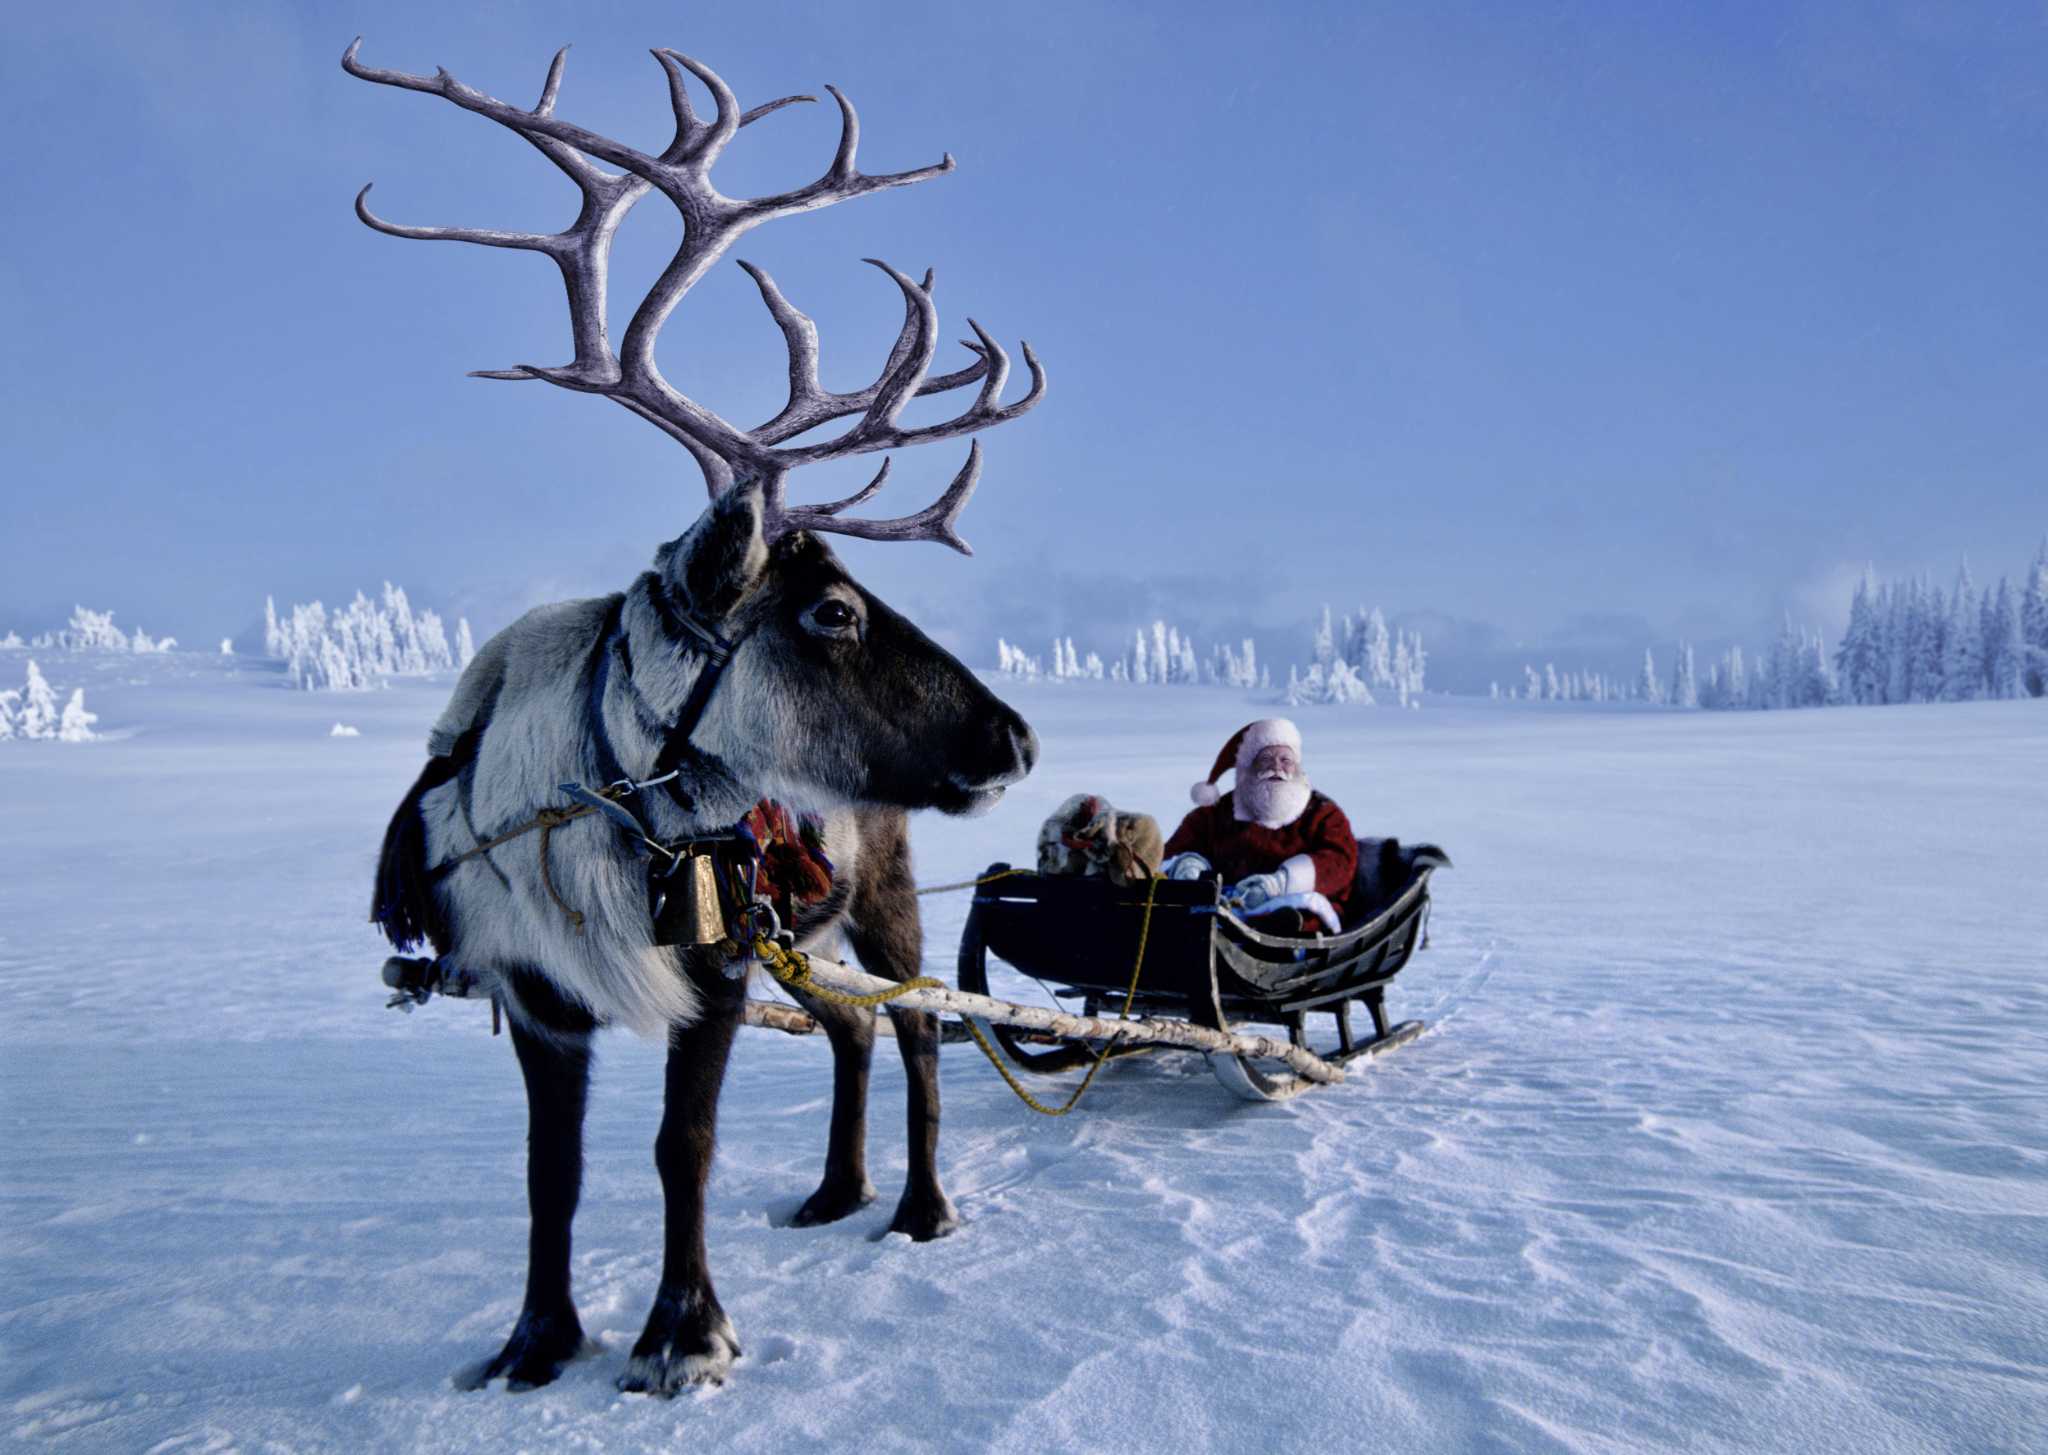 real santa and his reindeer